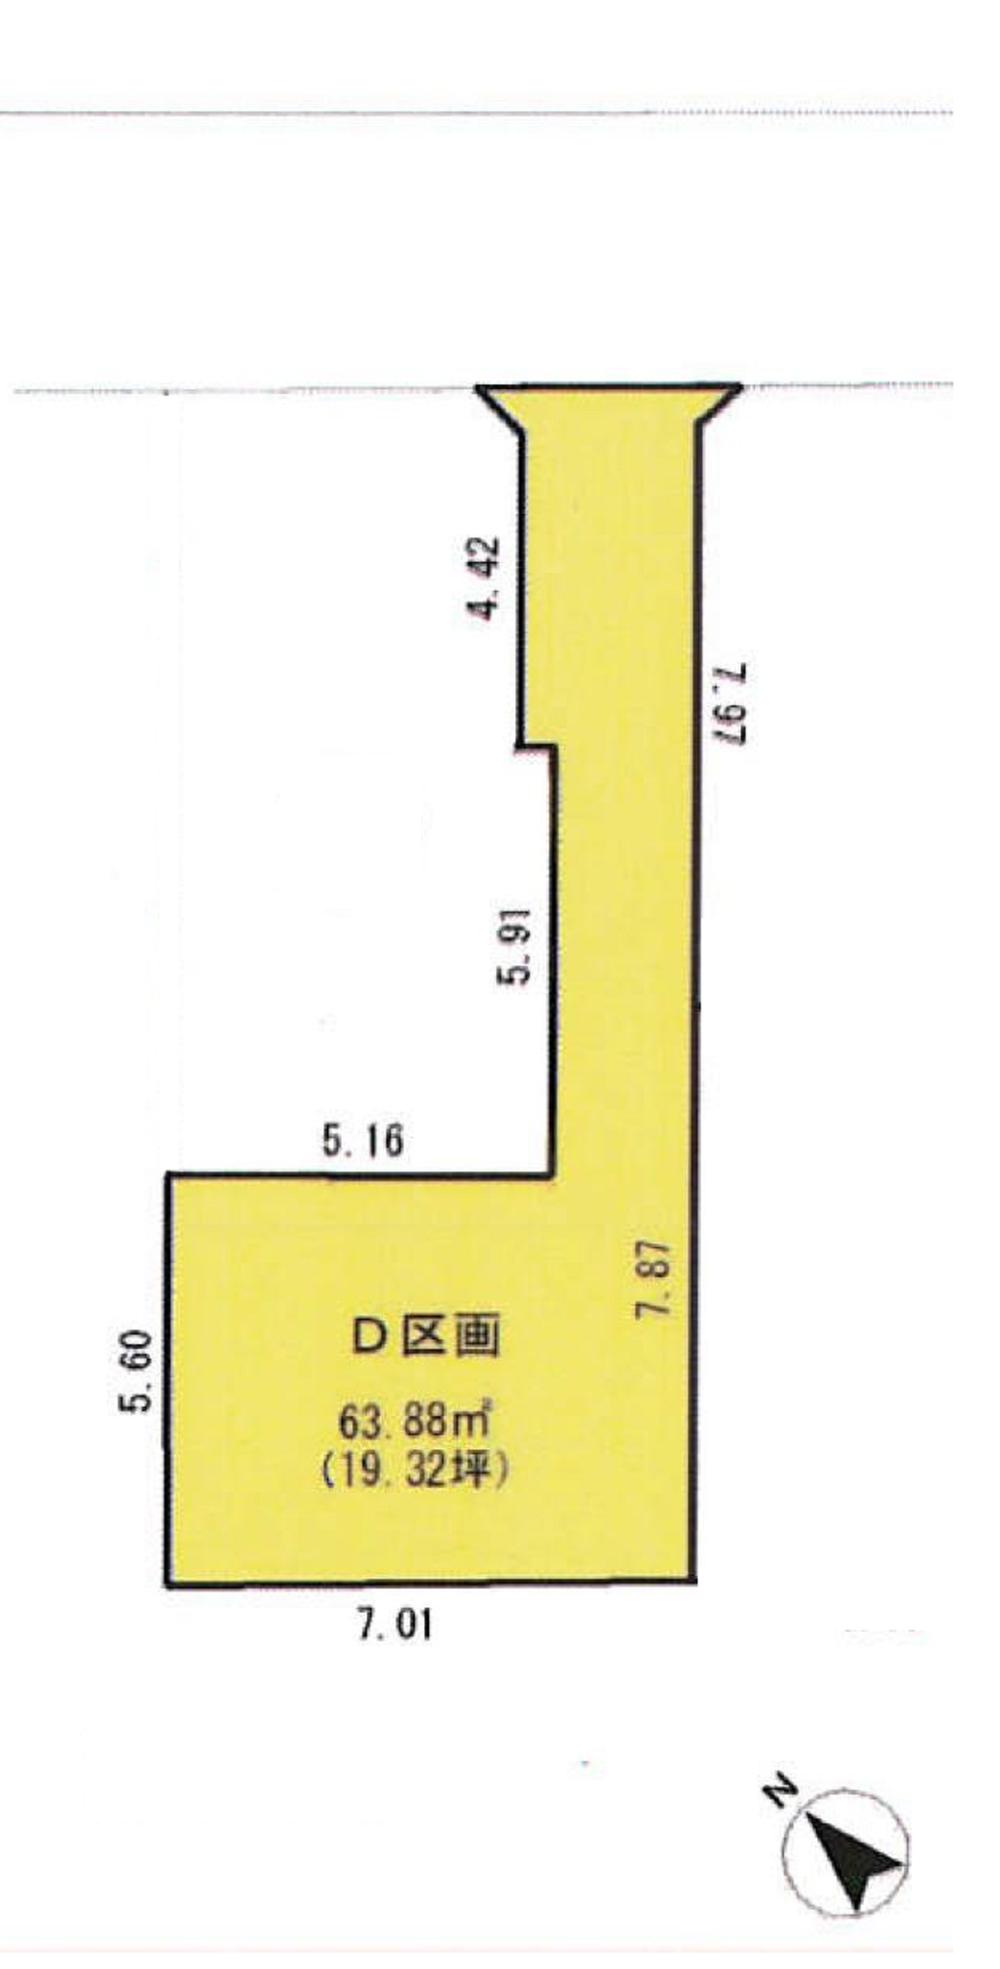 Compartment figure. Land price 38,900,000 yen, Land area 63.88 sq m D compartment: 38,900,000 yen